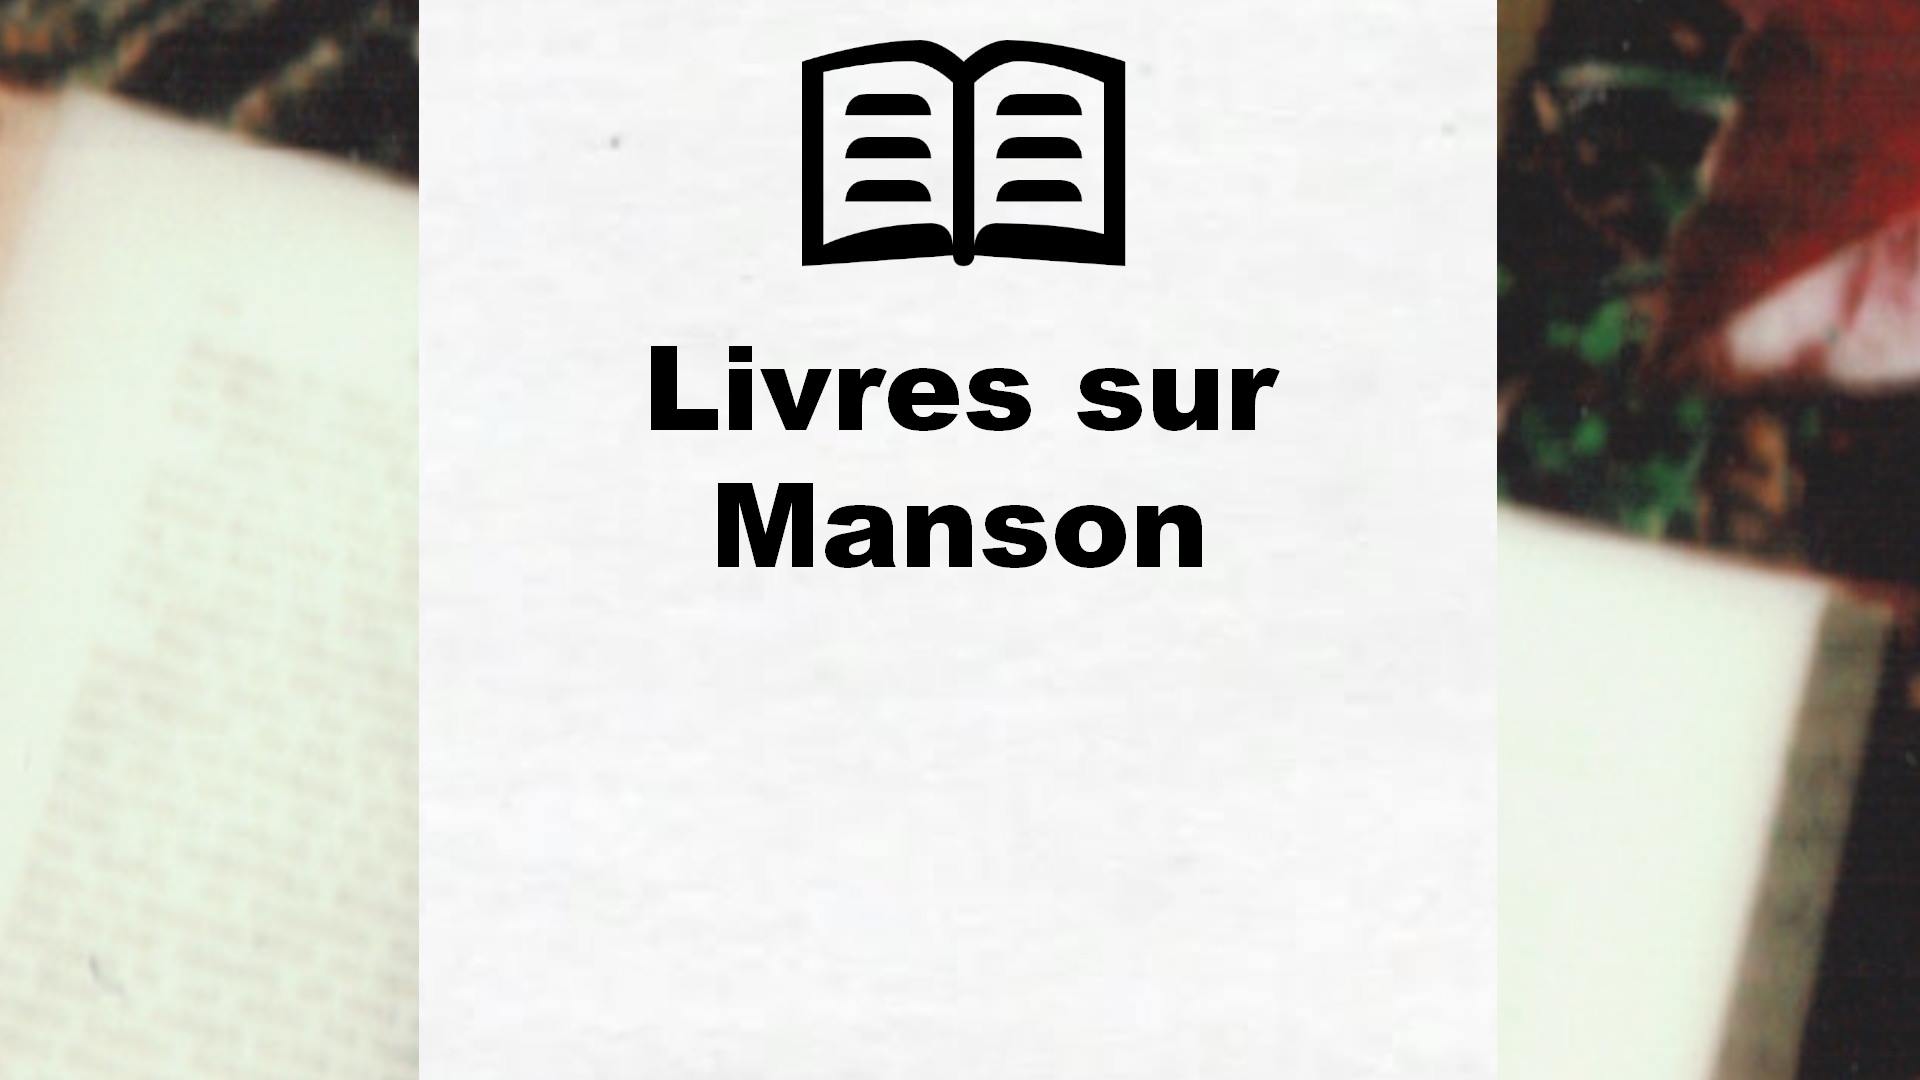 Livres sur Manson